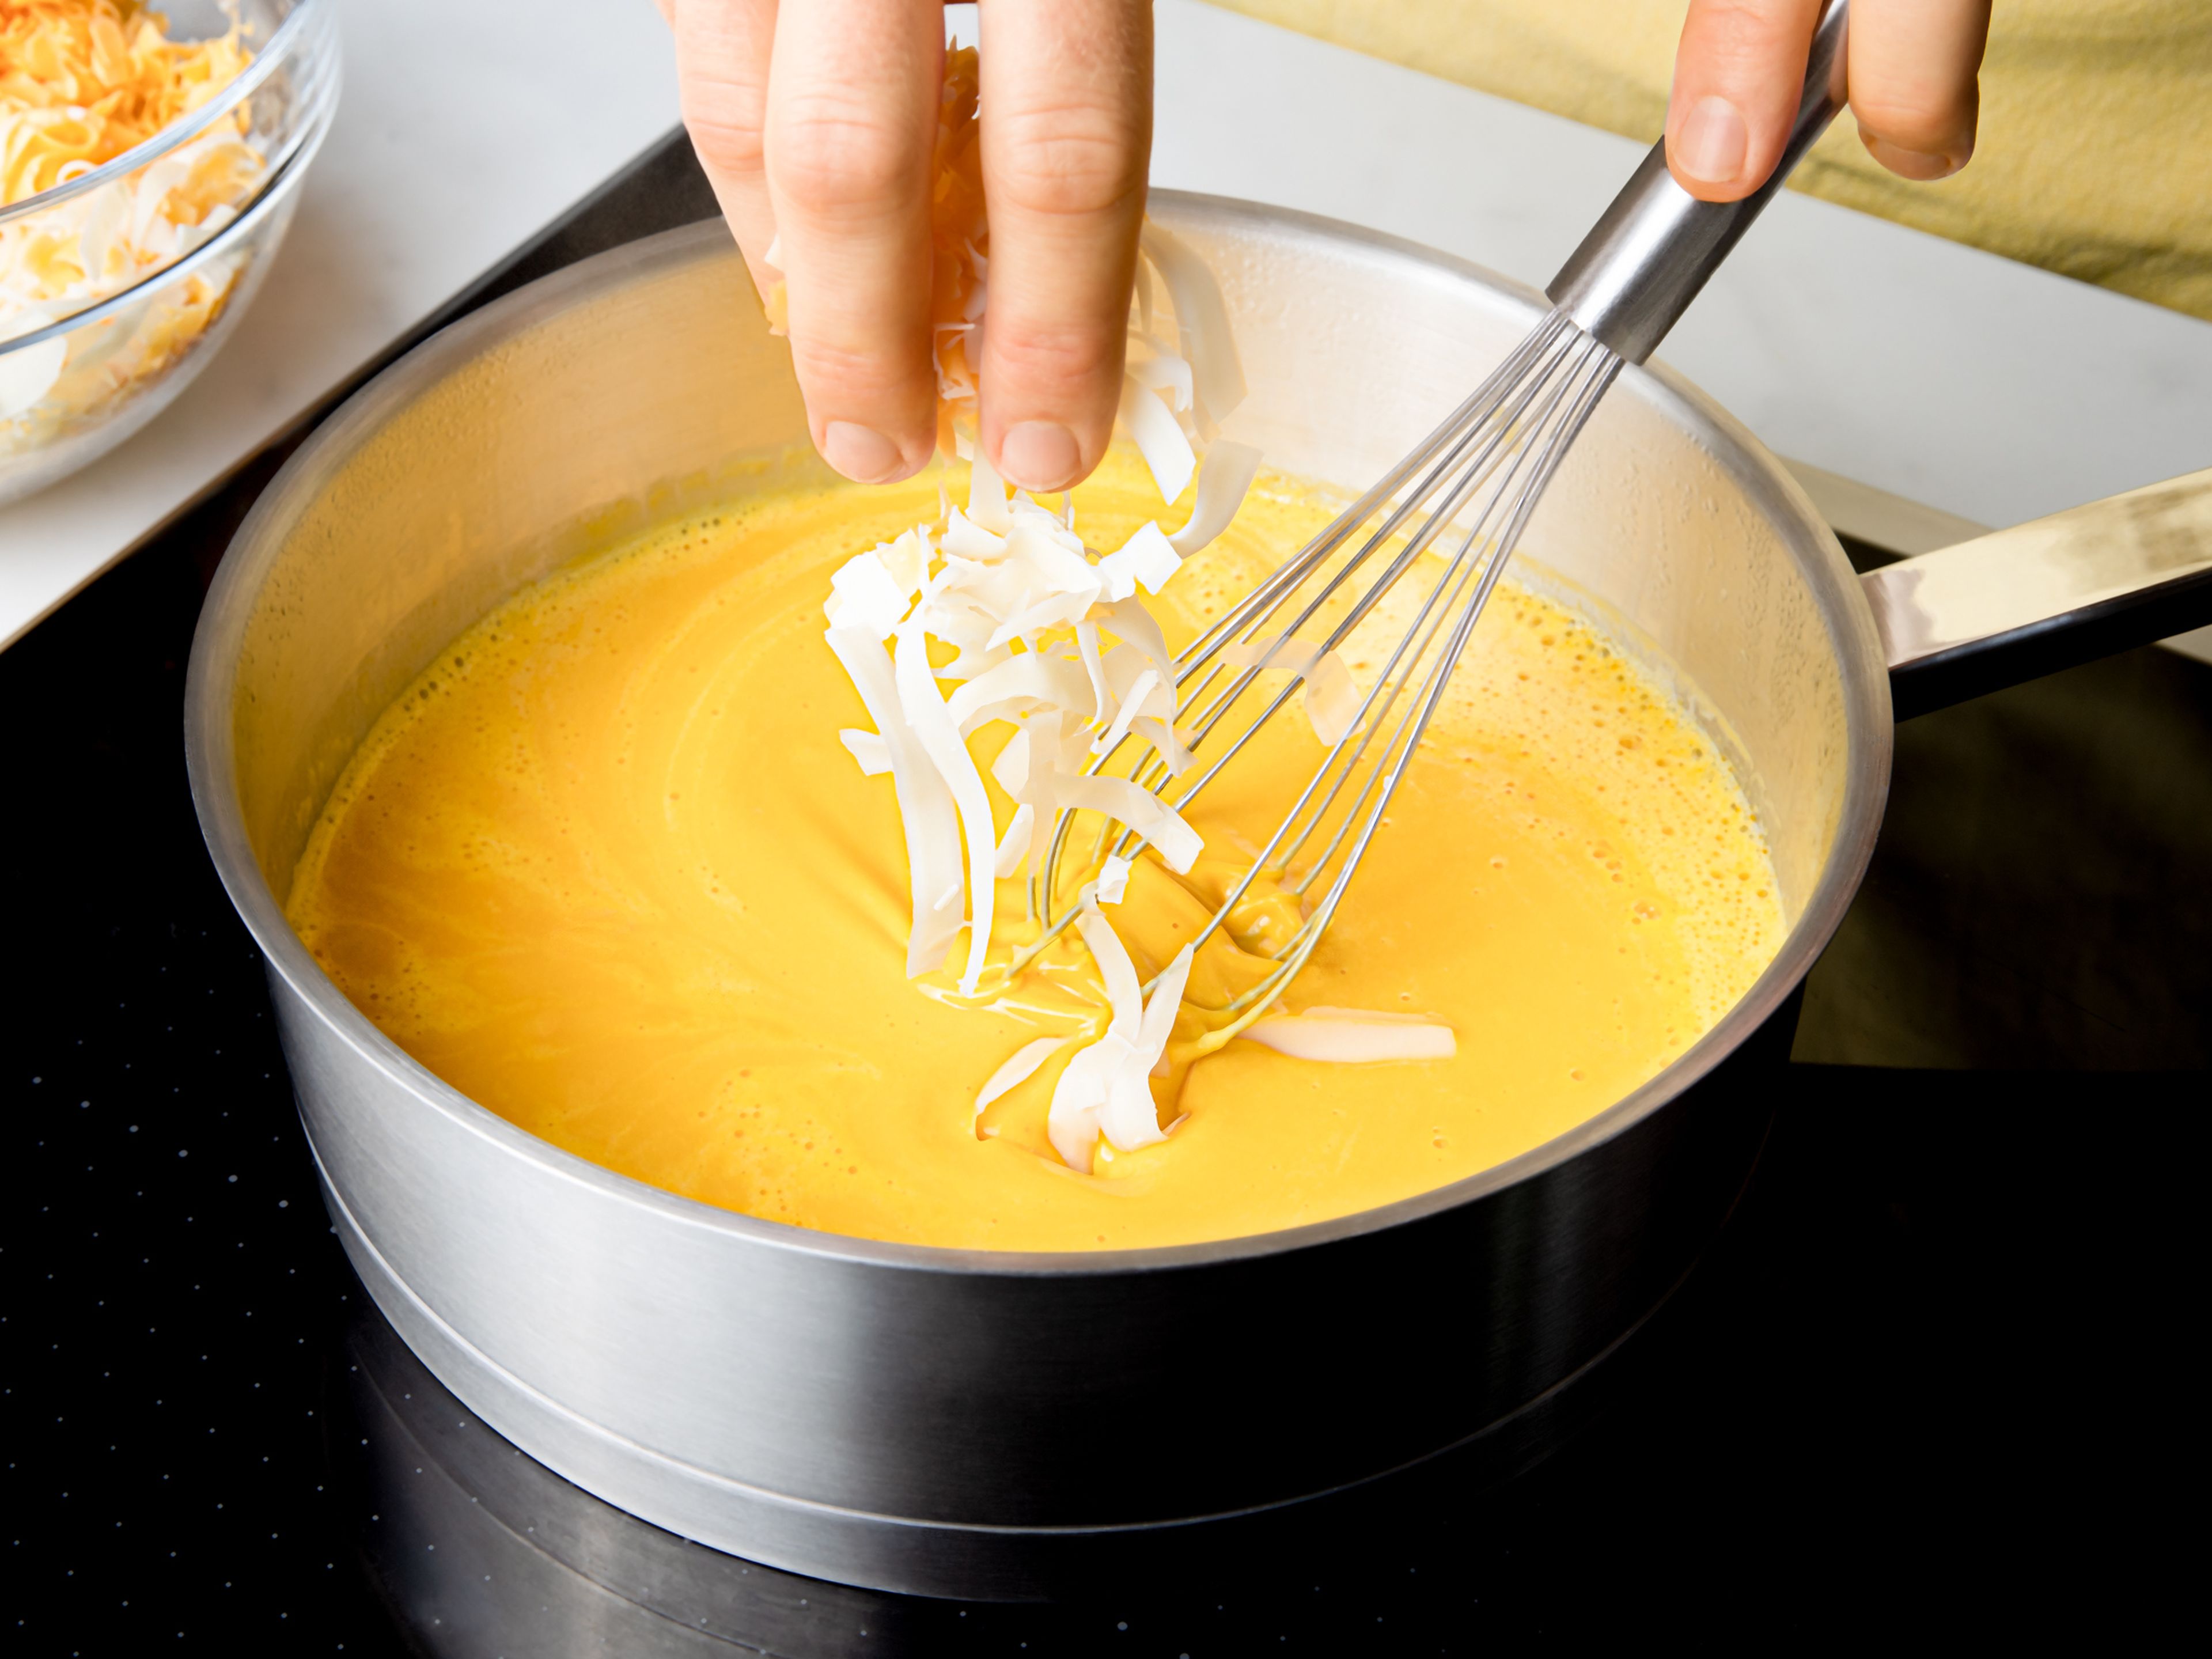 Pasta nach Packungsanweisung in gesalzenem Wasser kochen. Den weich gekochten Kürbis pürieren und die Hitze reduzieren. Nach und nach den geriebenen Käse unter ständigem Rühren zugeben, bis alles geschmolzen und eine cremige Sauce entstanden ist.